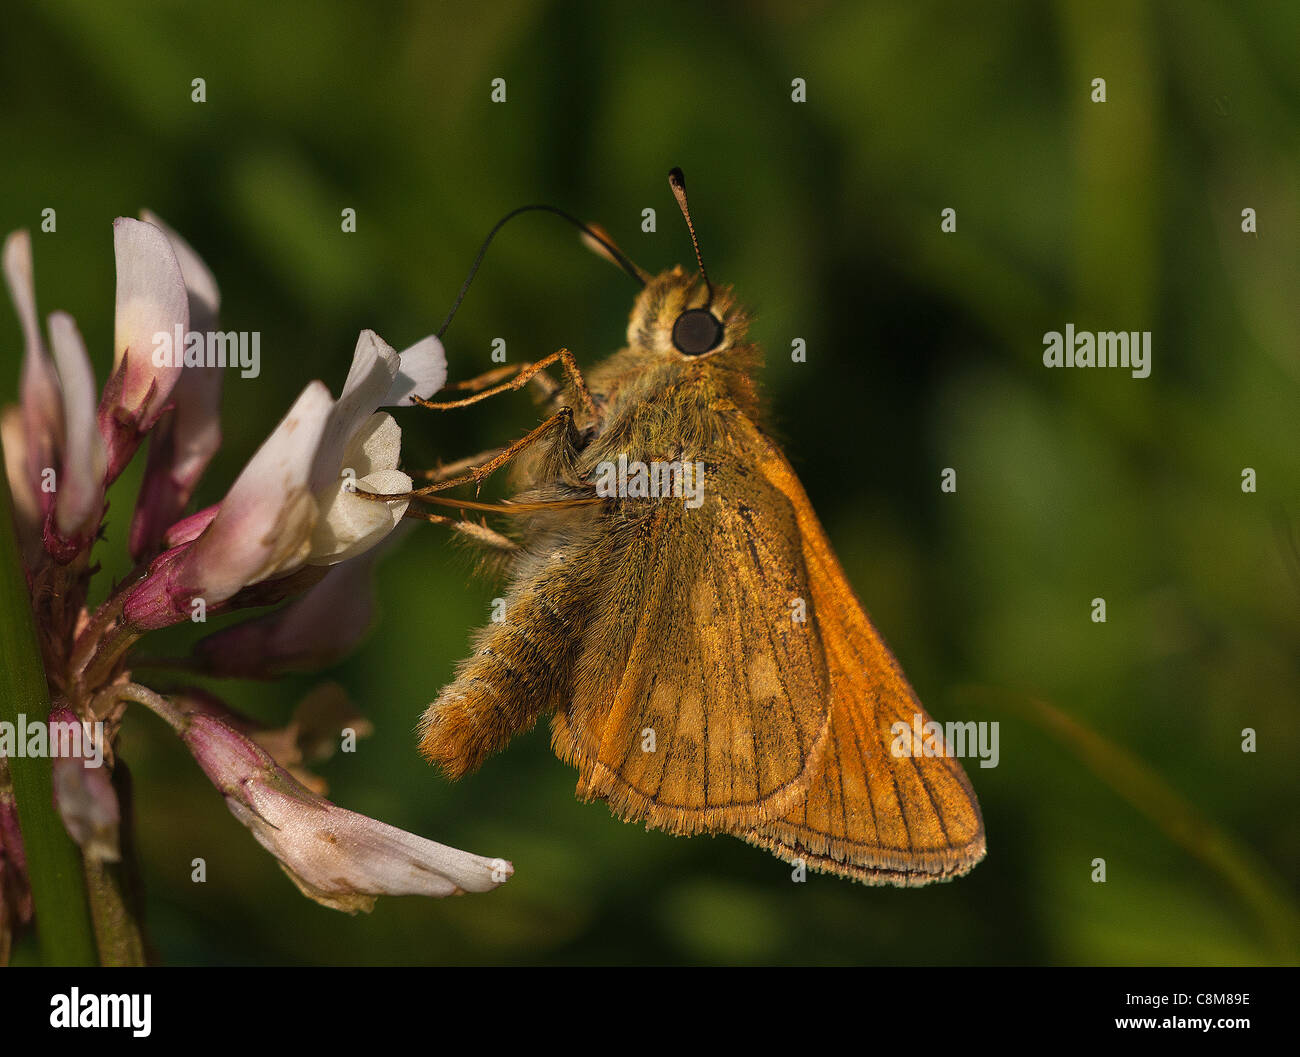 Grand Skipper Butterfly se nourrissant de trèfle, avec ses ailes loin de son corps, montrant comment il se nourrit sur les fleurs. Banque D'Images